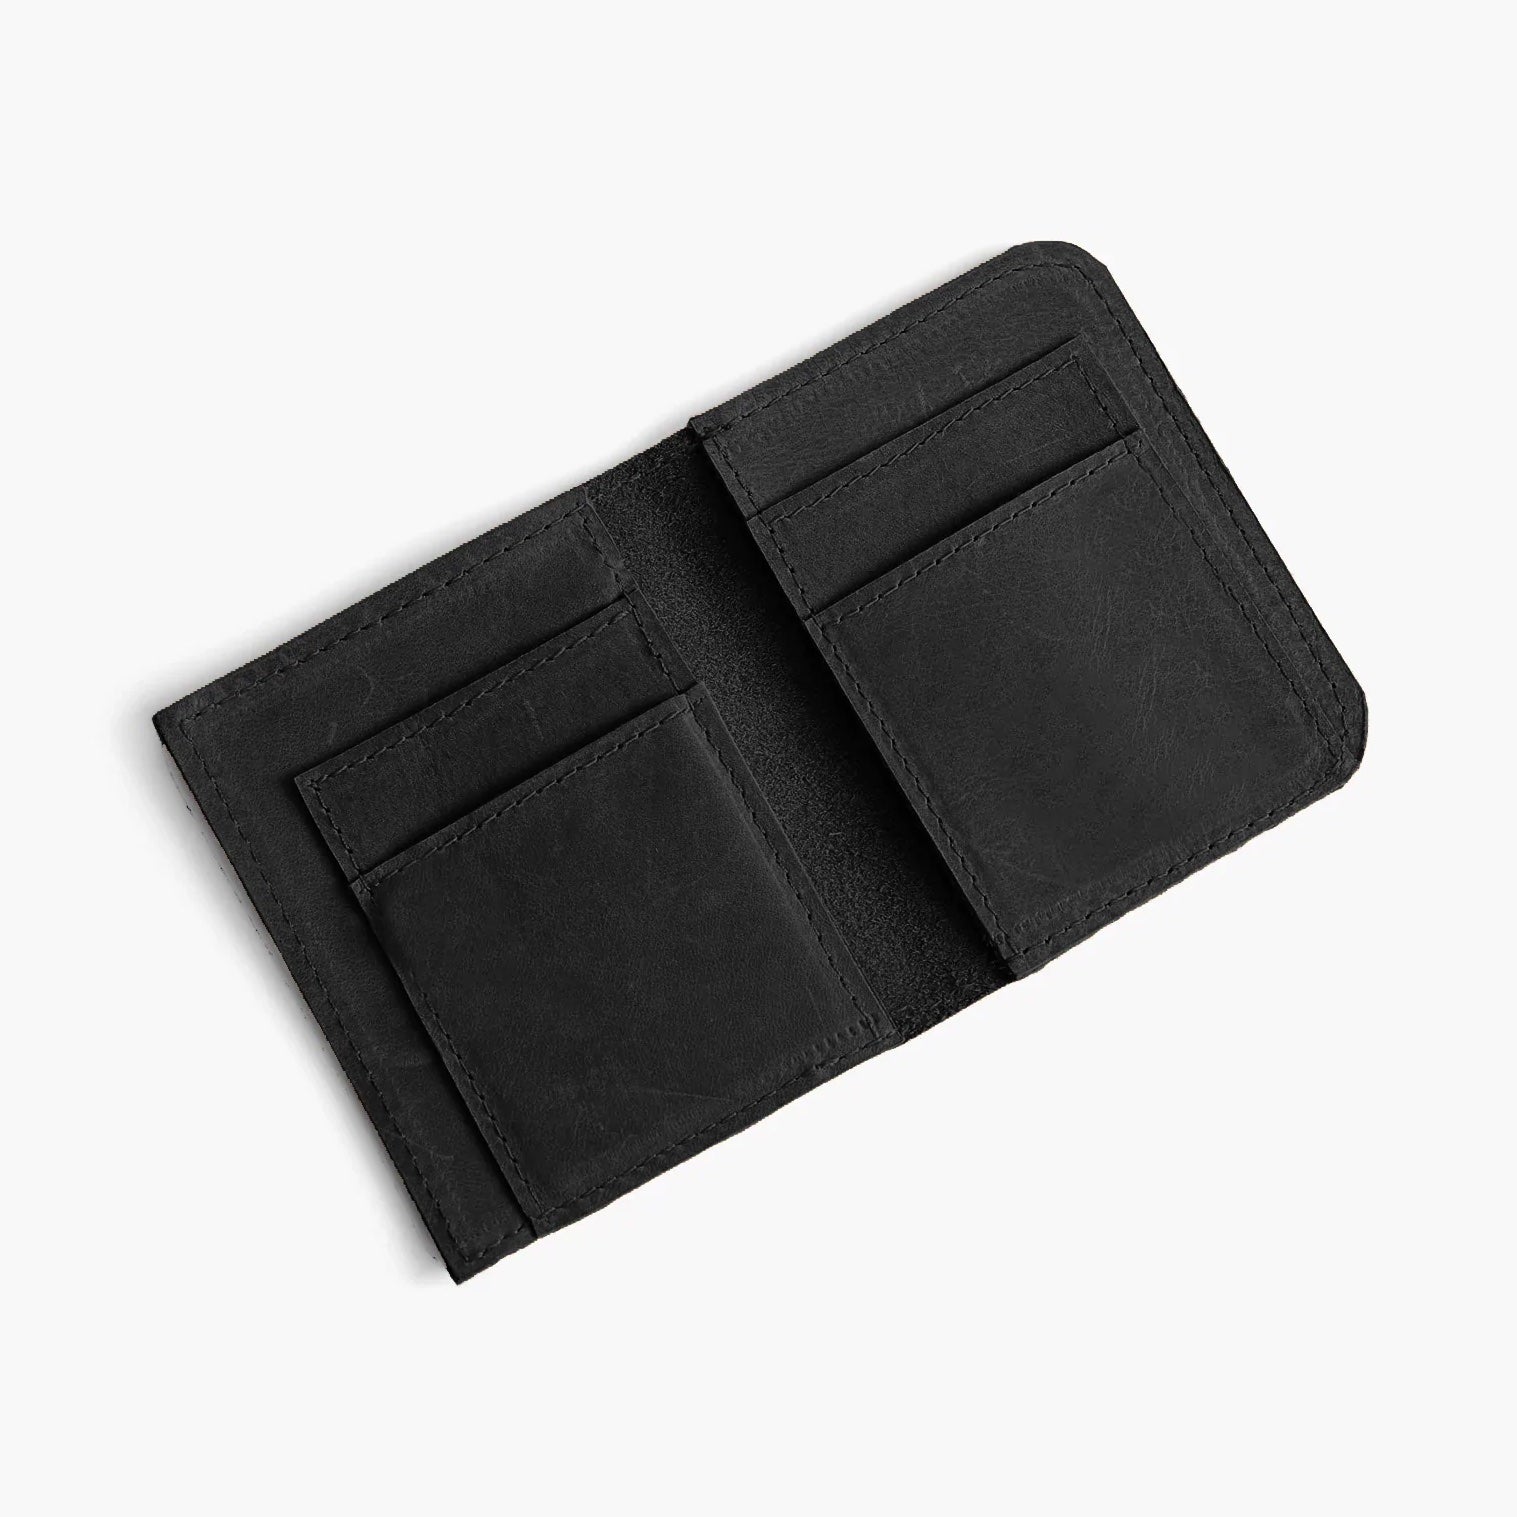 ABLE Debre Mini Wallet black leather